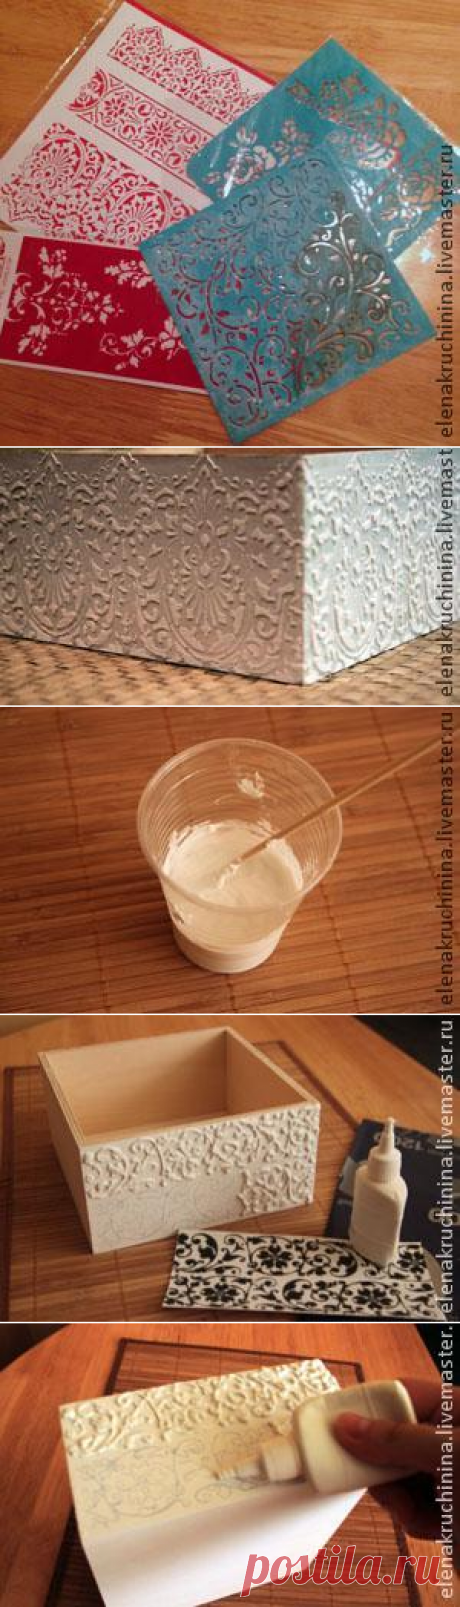 Создание объемных орнаментов/узоров с помощью шпатлевки - Ярмарка Мастеров - ручная работа, handmade